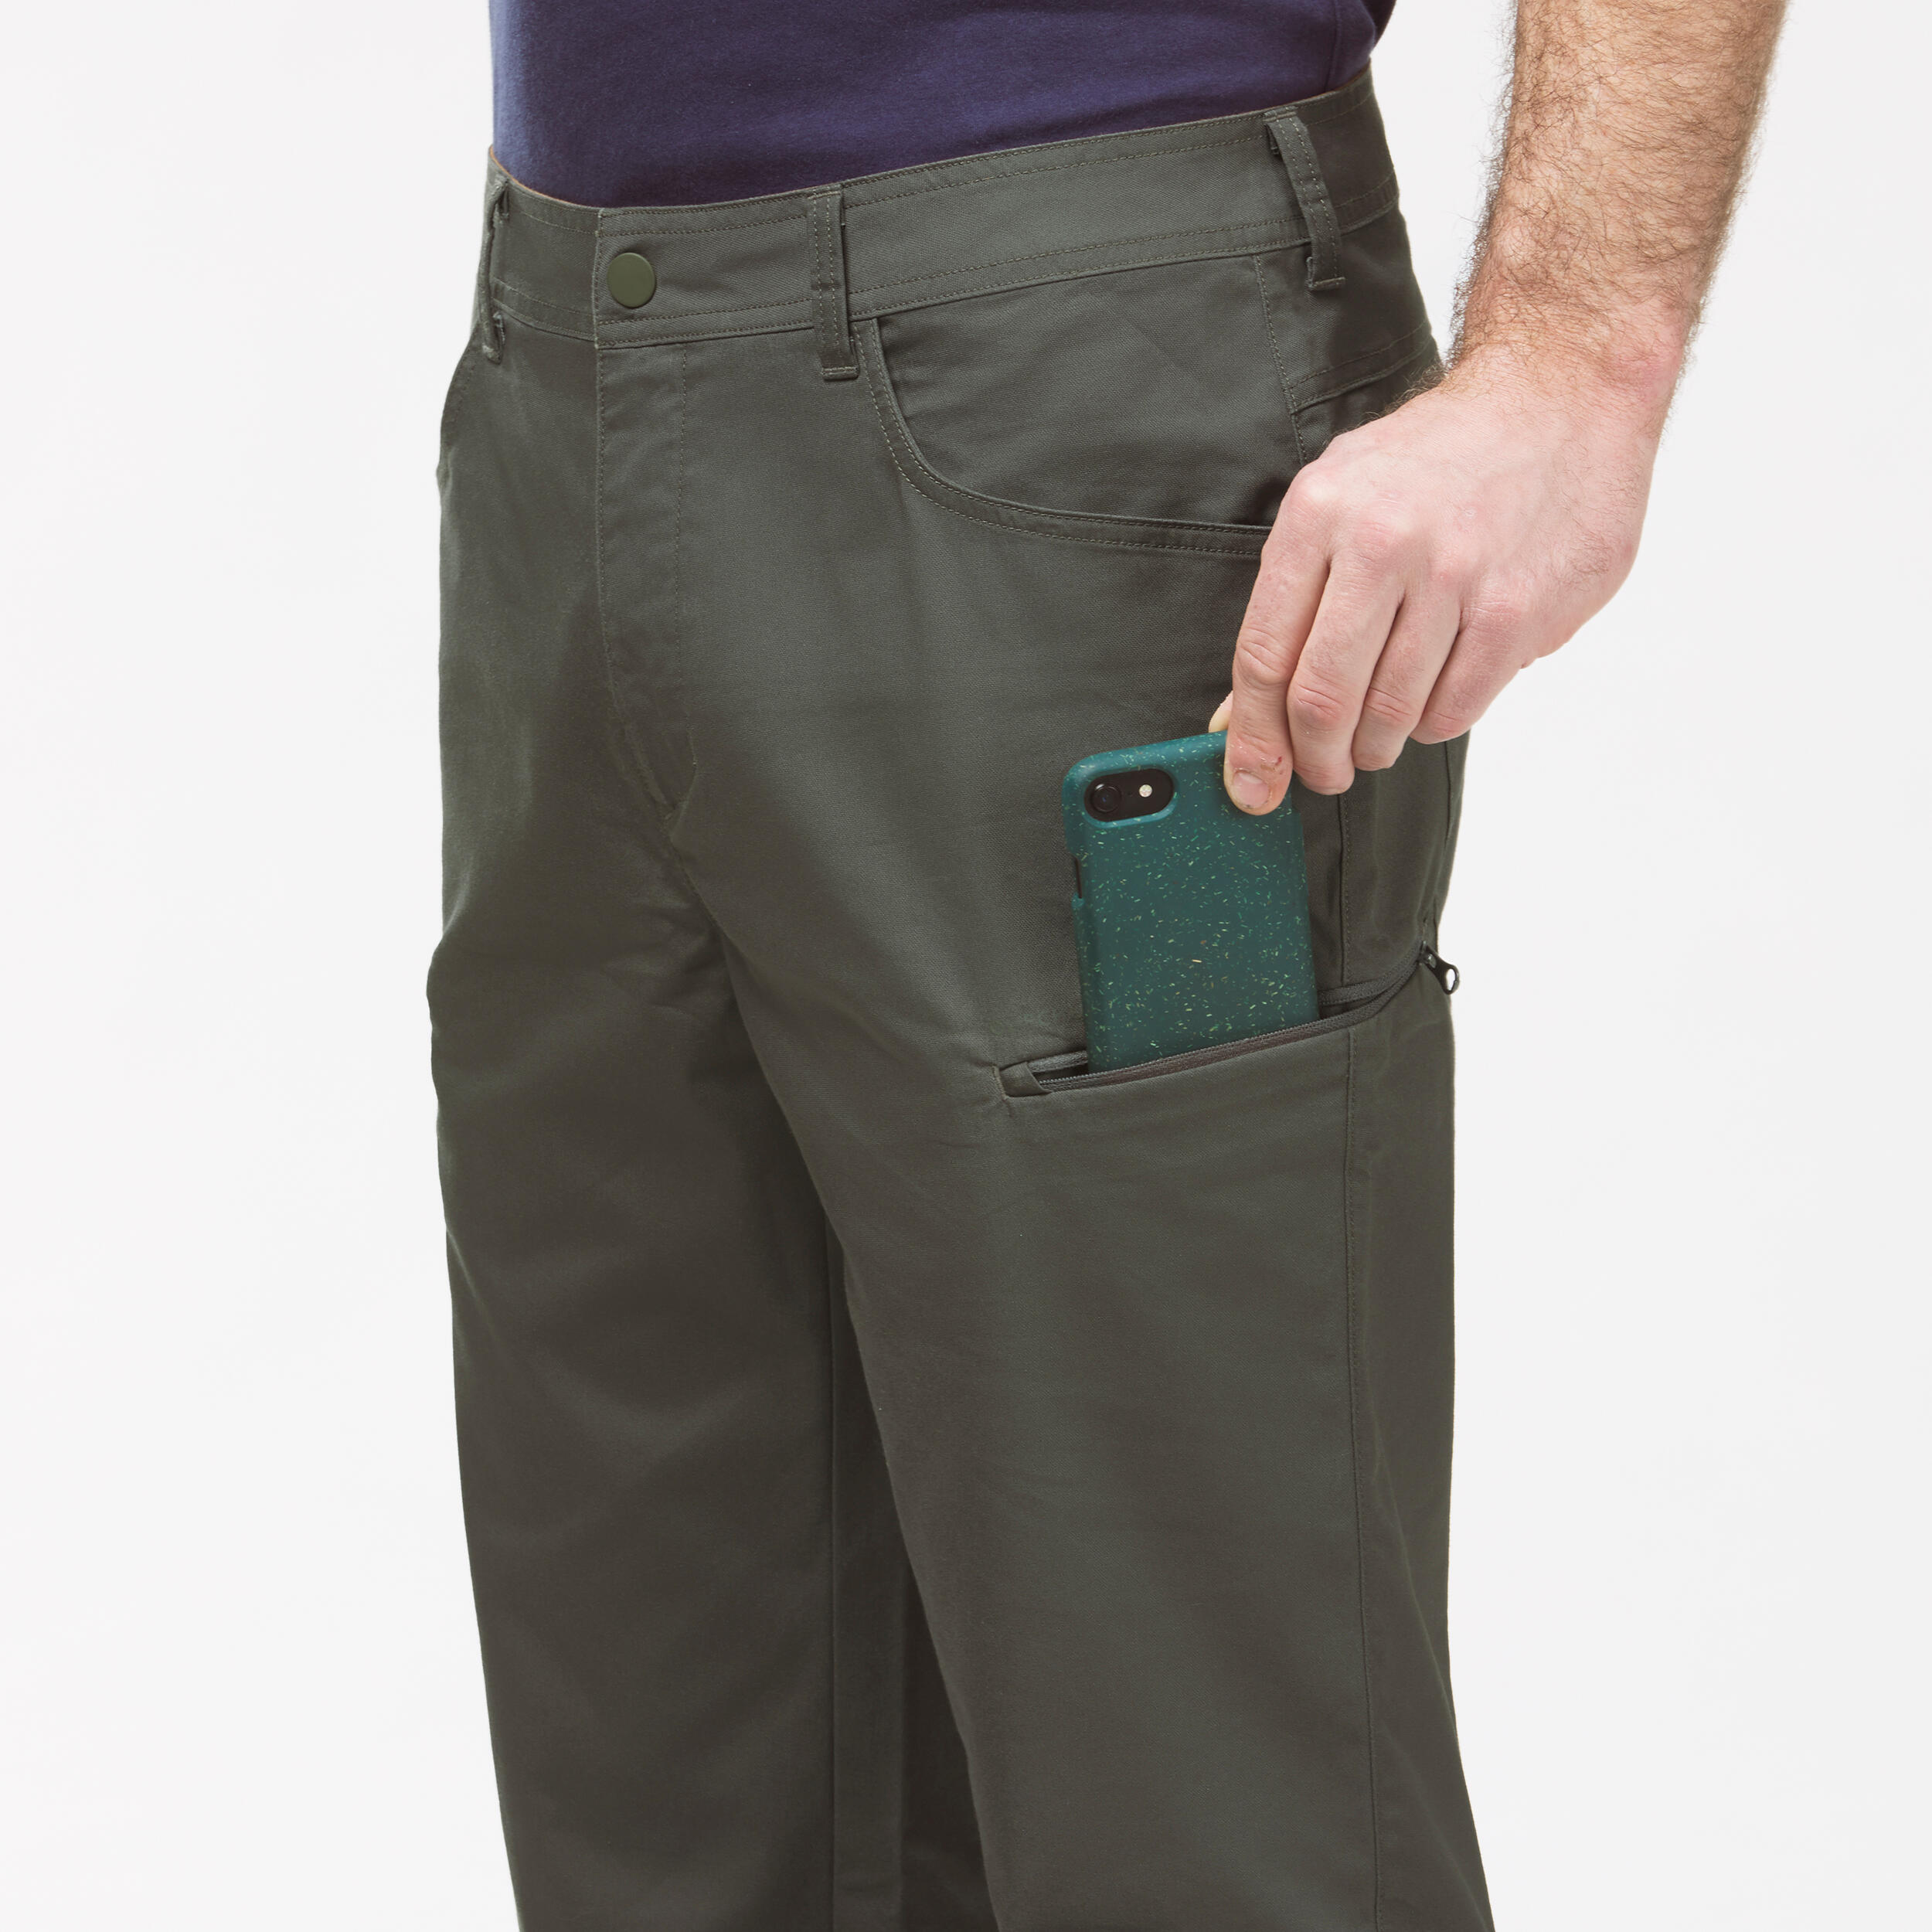 Men's NH500 Regular off-road hiking trousers 9/9